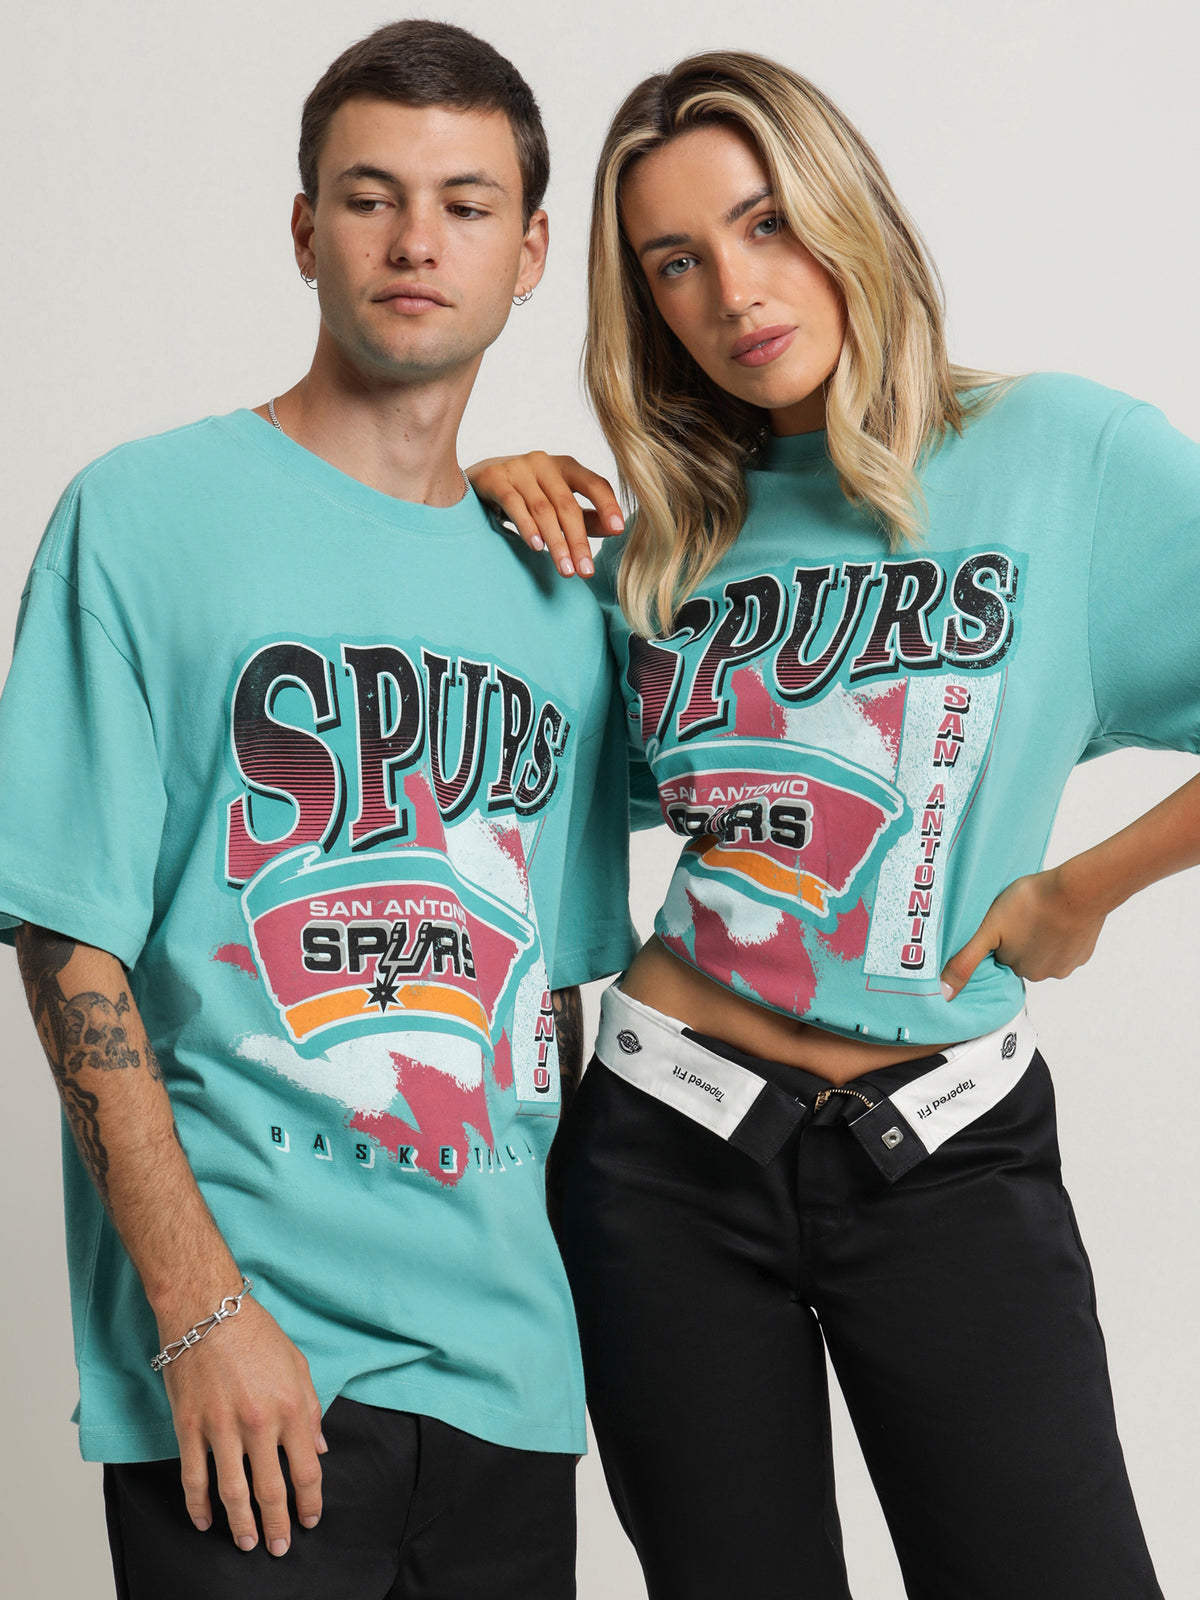 San Antonio Spurs T-Shirt in Aqua